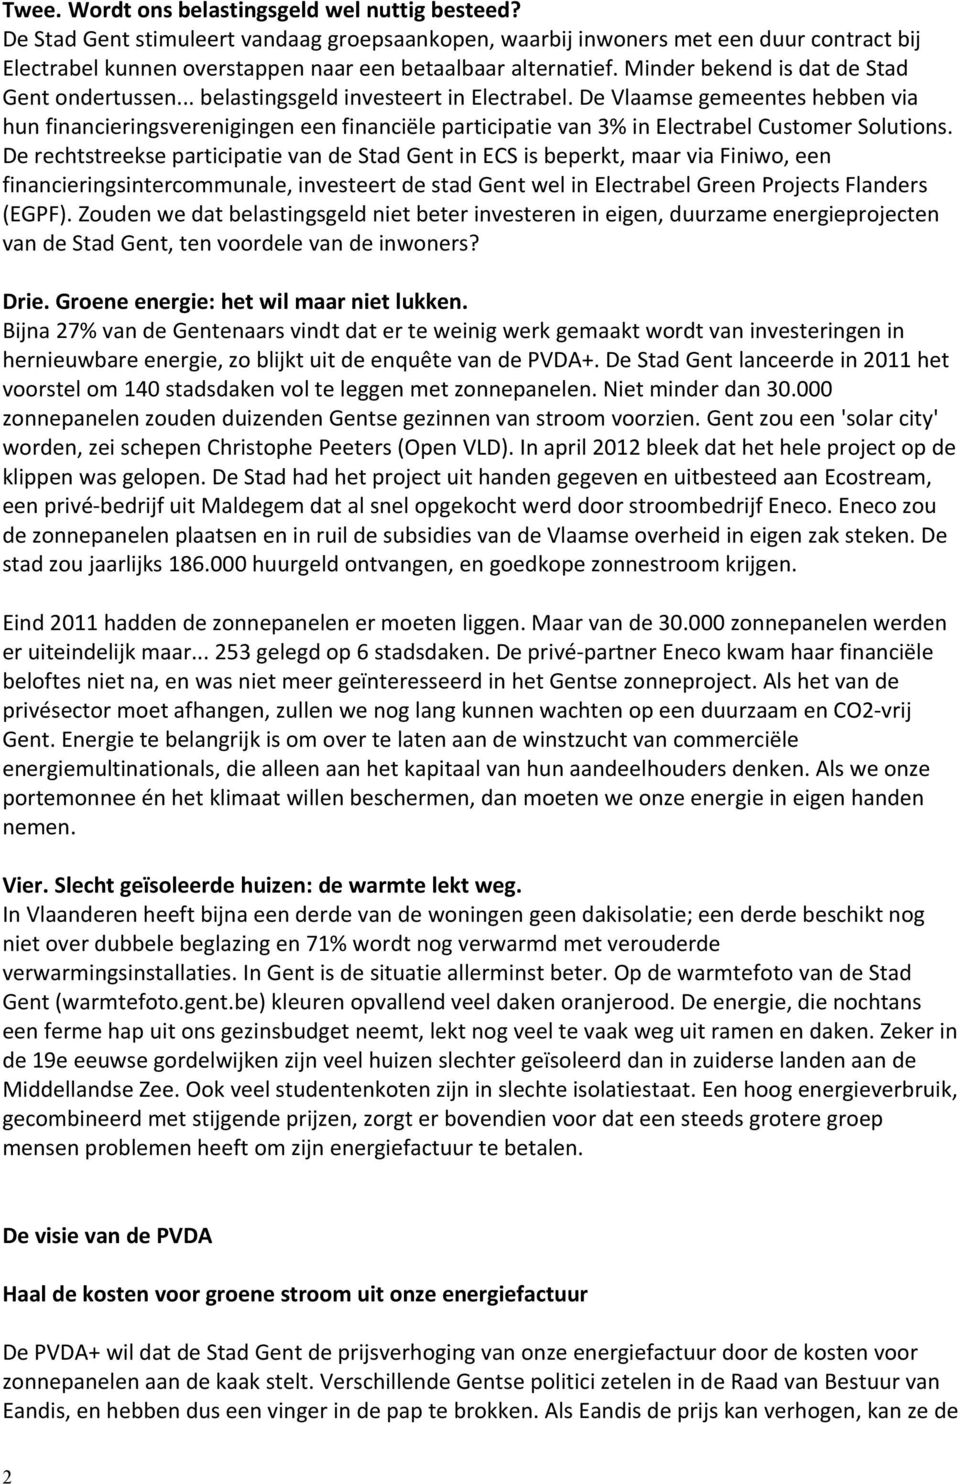 .. belastingsgeld investeert in Electrabel. De Vlaamse gemeentes hebben via hun financieringsverenigingen een financiële participatie van 3% in Electrabel Customer Solutions.